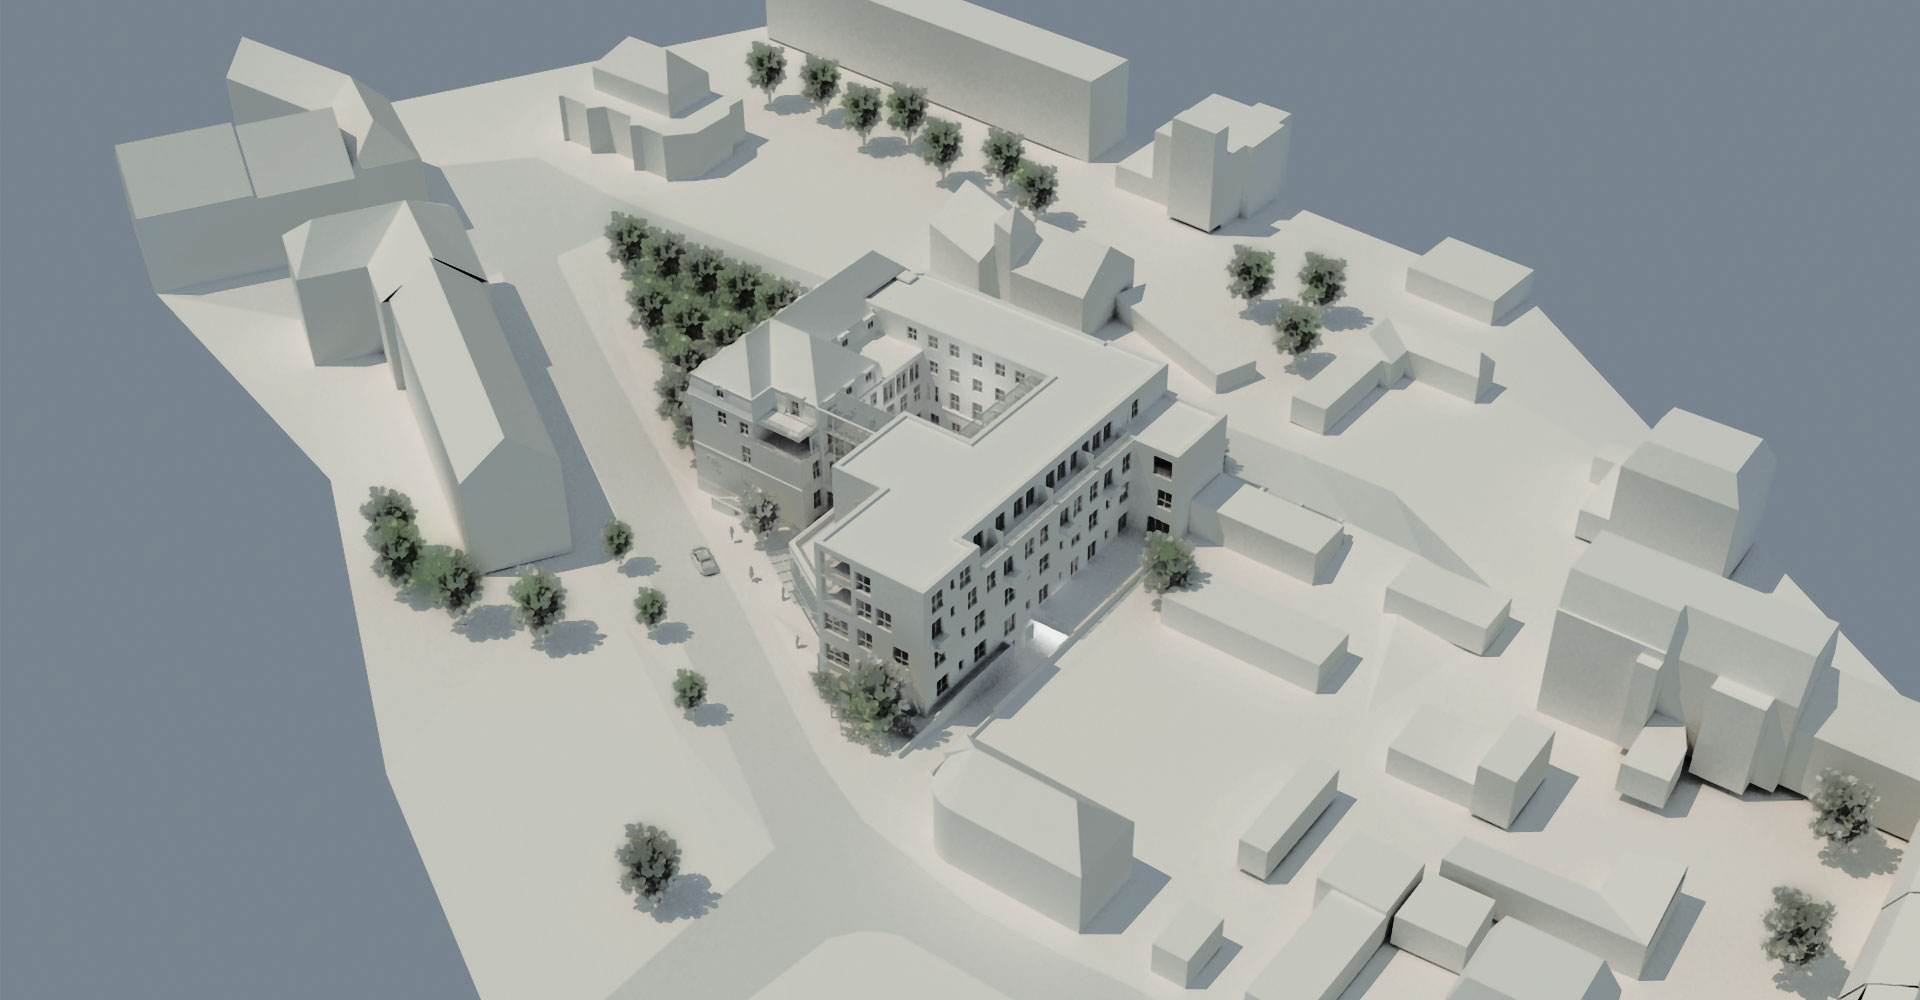 Modell 2 Senioren Quartier Oelsnitz, mga consult Rheinbreitbach Architekten, Konzeption und Planung